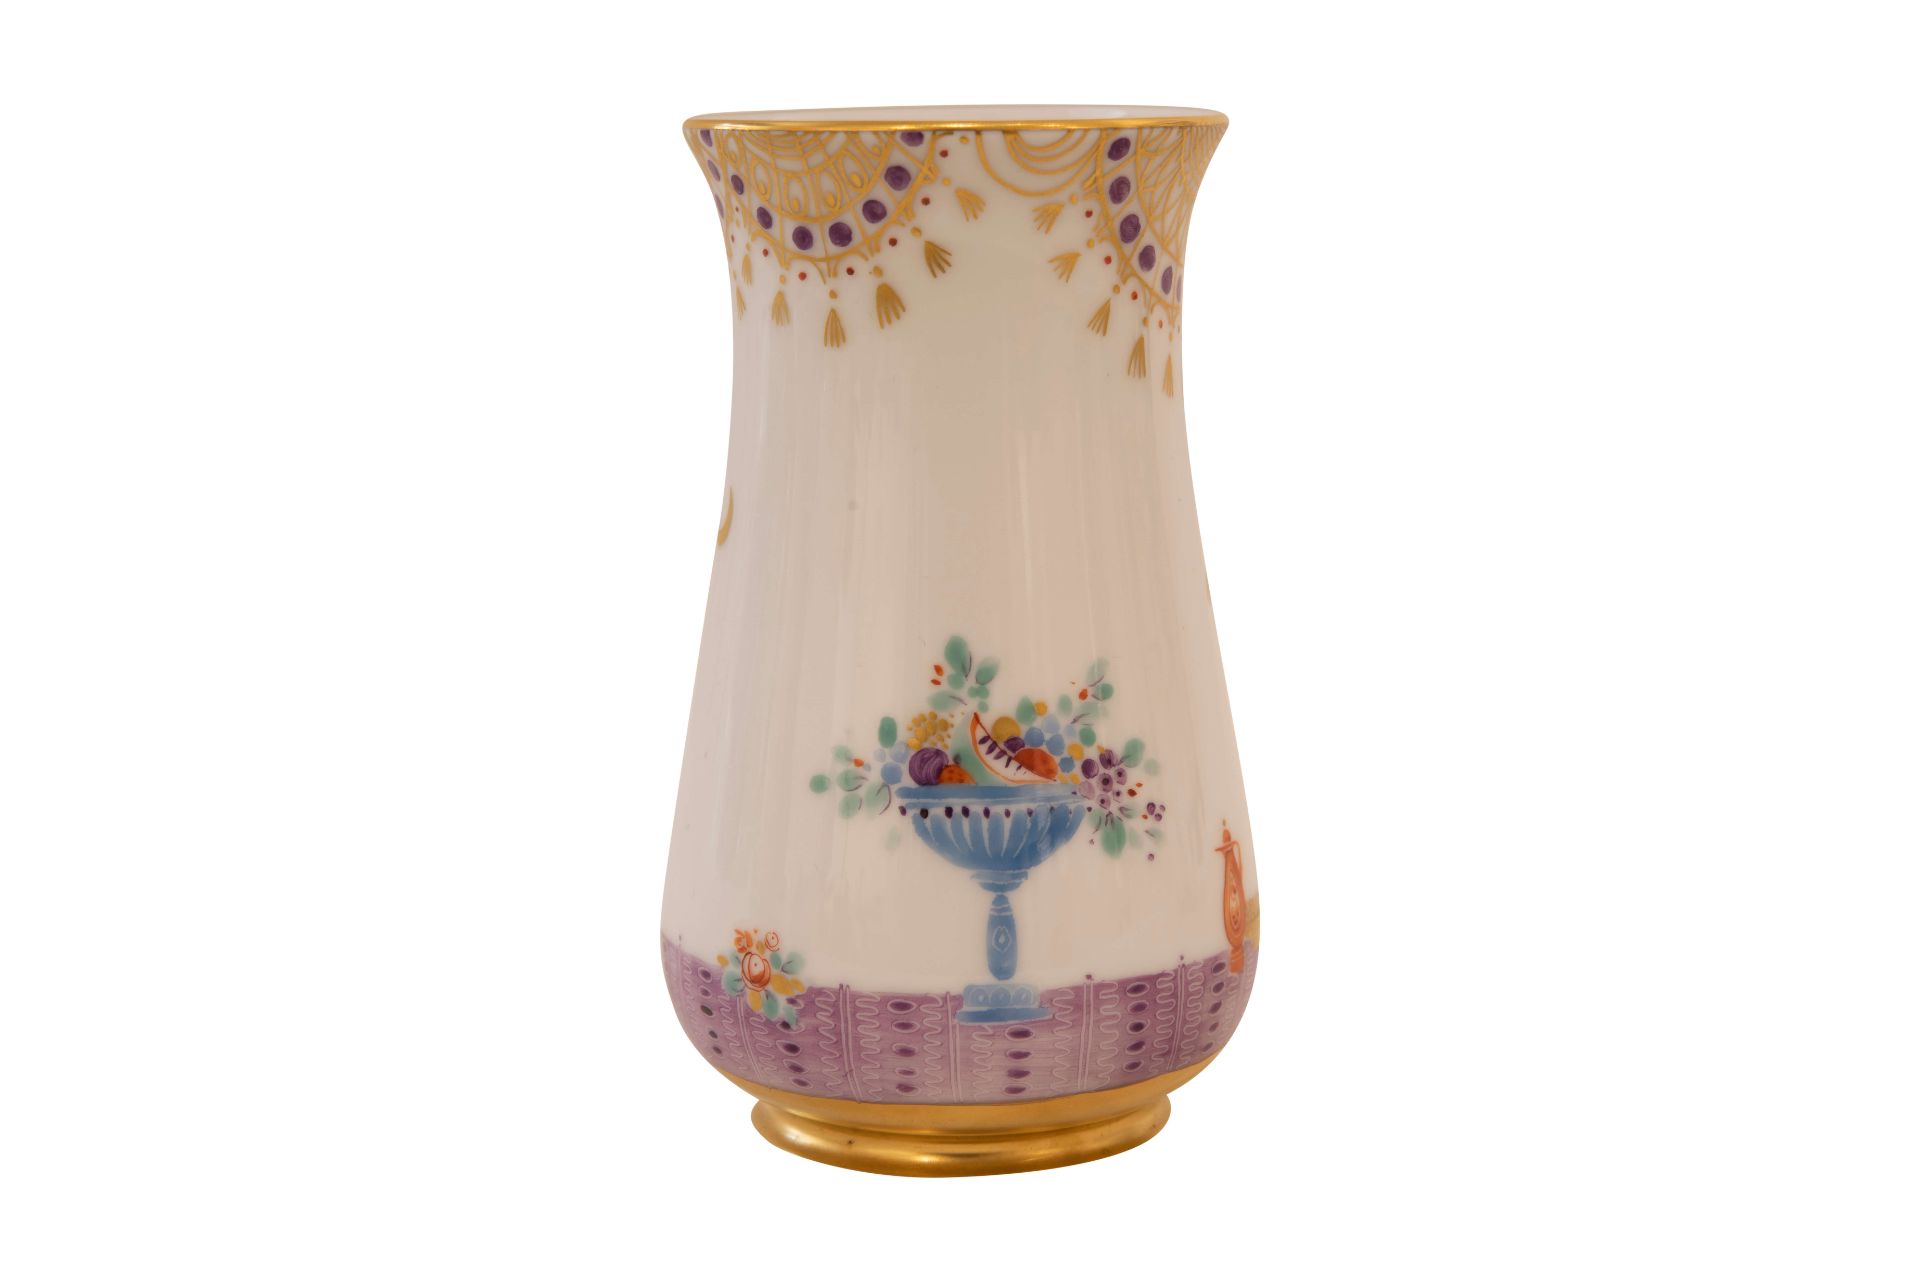 Meissen kleine Kelchvase 1001 Nacht|Meissen Small Goblet Vase 1001 Nights - Image 3 of 5